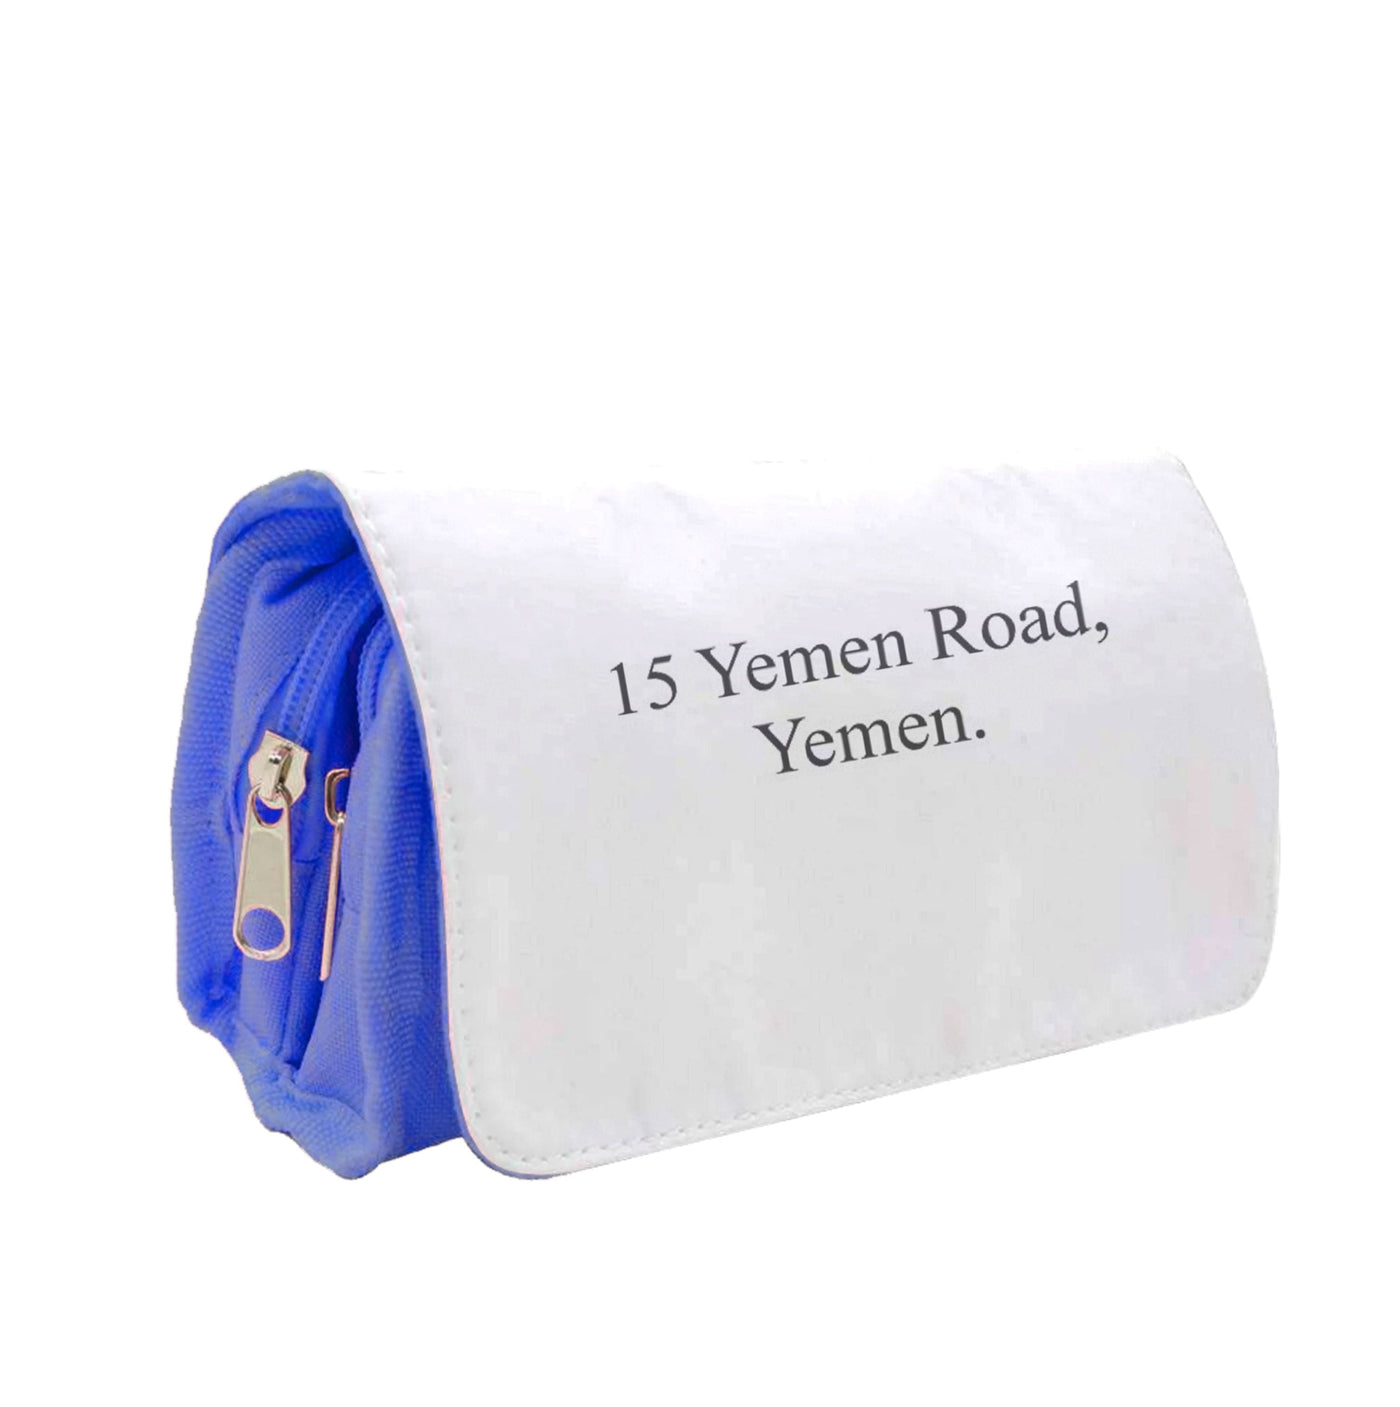 15 Yemen Road, Yemen - Friends Pencil Case